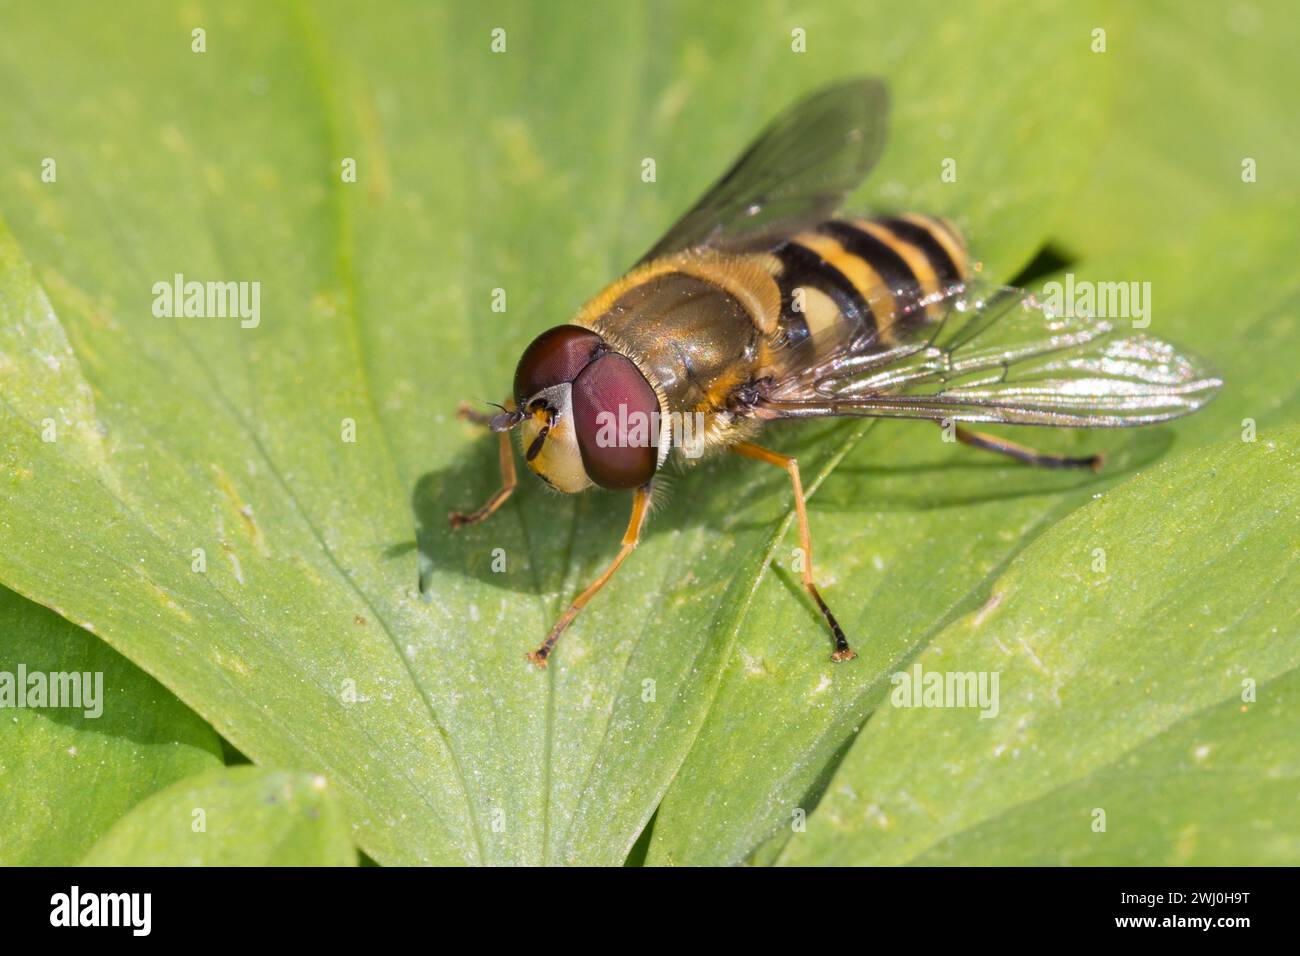 Garten-Schwebfliege, Gartenschwebfliege, Gemeine Schwebfliege, Männchen, Syrphus spec., hover fly, male Stock Photo